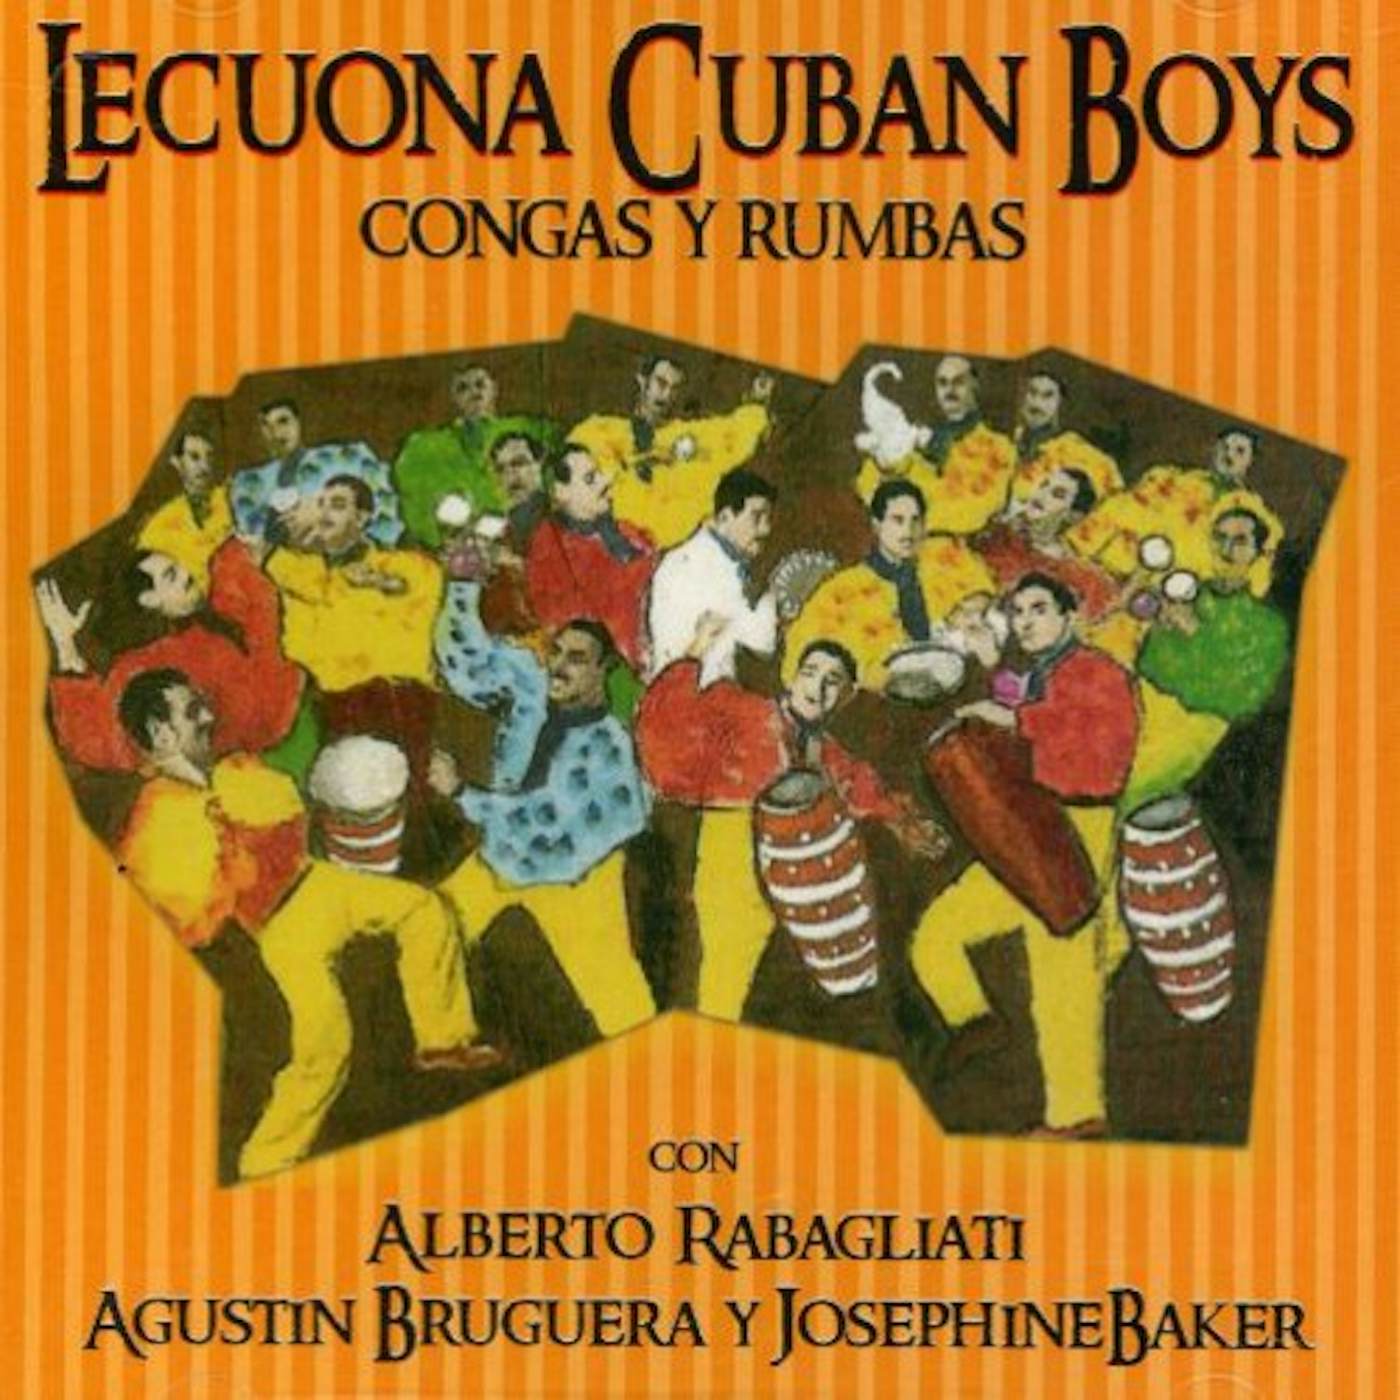 Lecuona Cuban Boys CONGAS Y RUMBAS CD